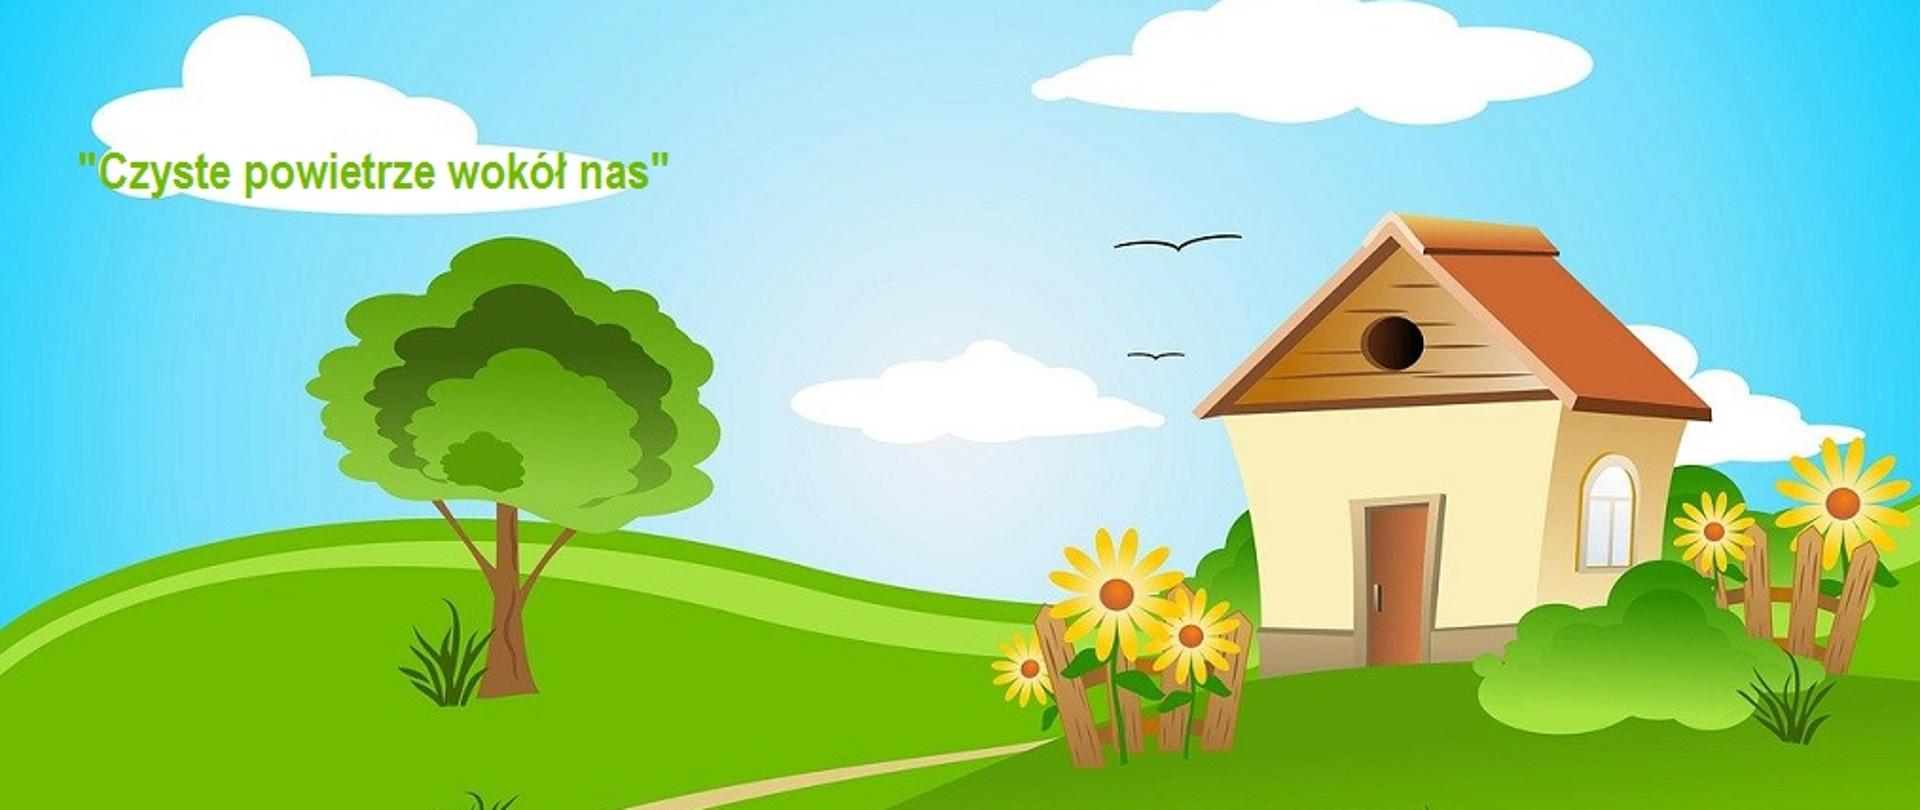 grafika bajkowego domku na tle zielonej trawy, a wokół niego kwiaty - słoneczniki i białe chmury na błękitnym niebie. napis na chmurze "Czyste powietrze wokół nas"